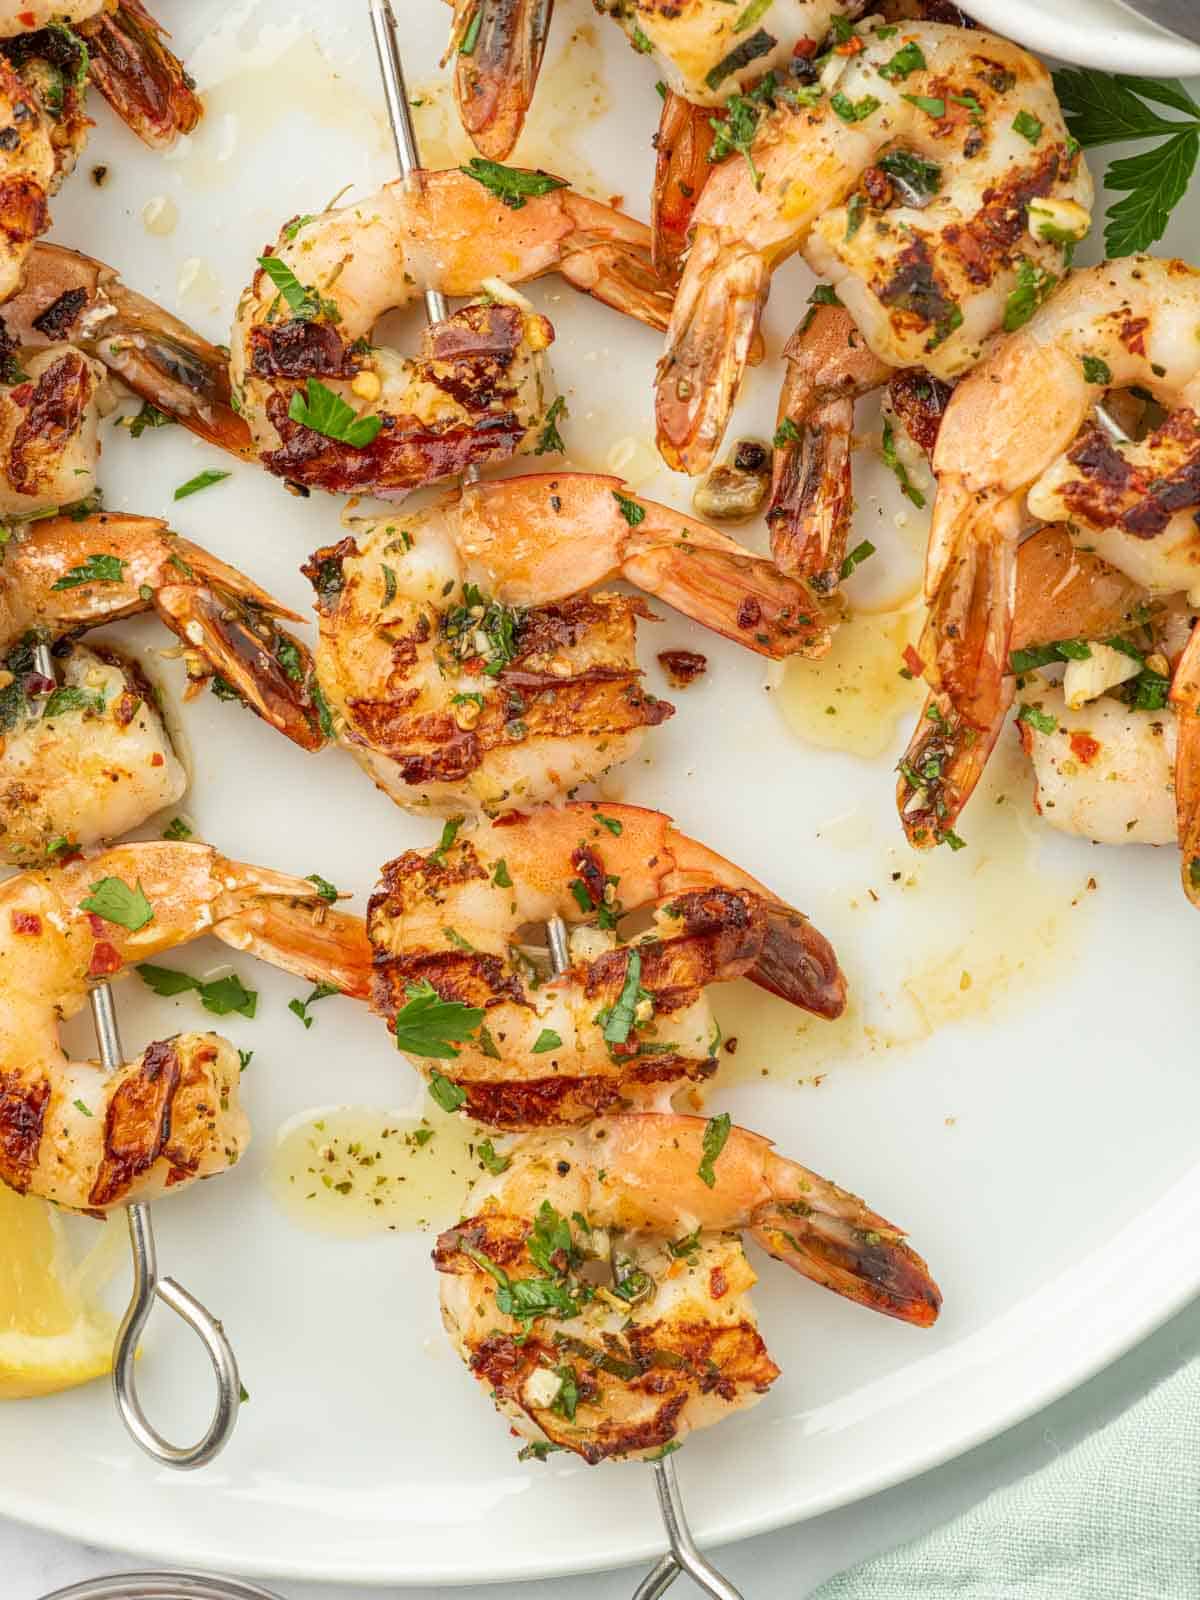 Garlicky shrimp skewers on a plate.